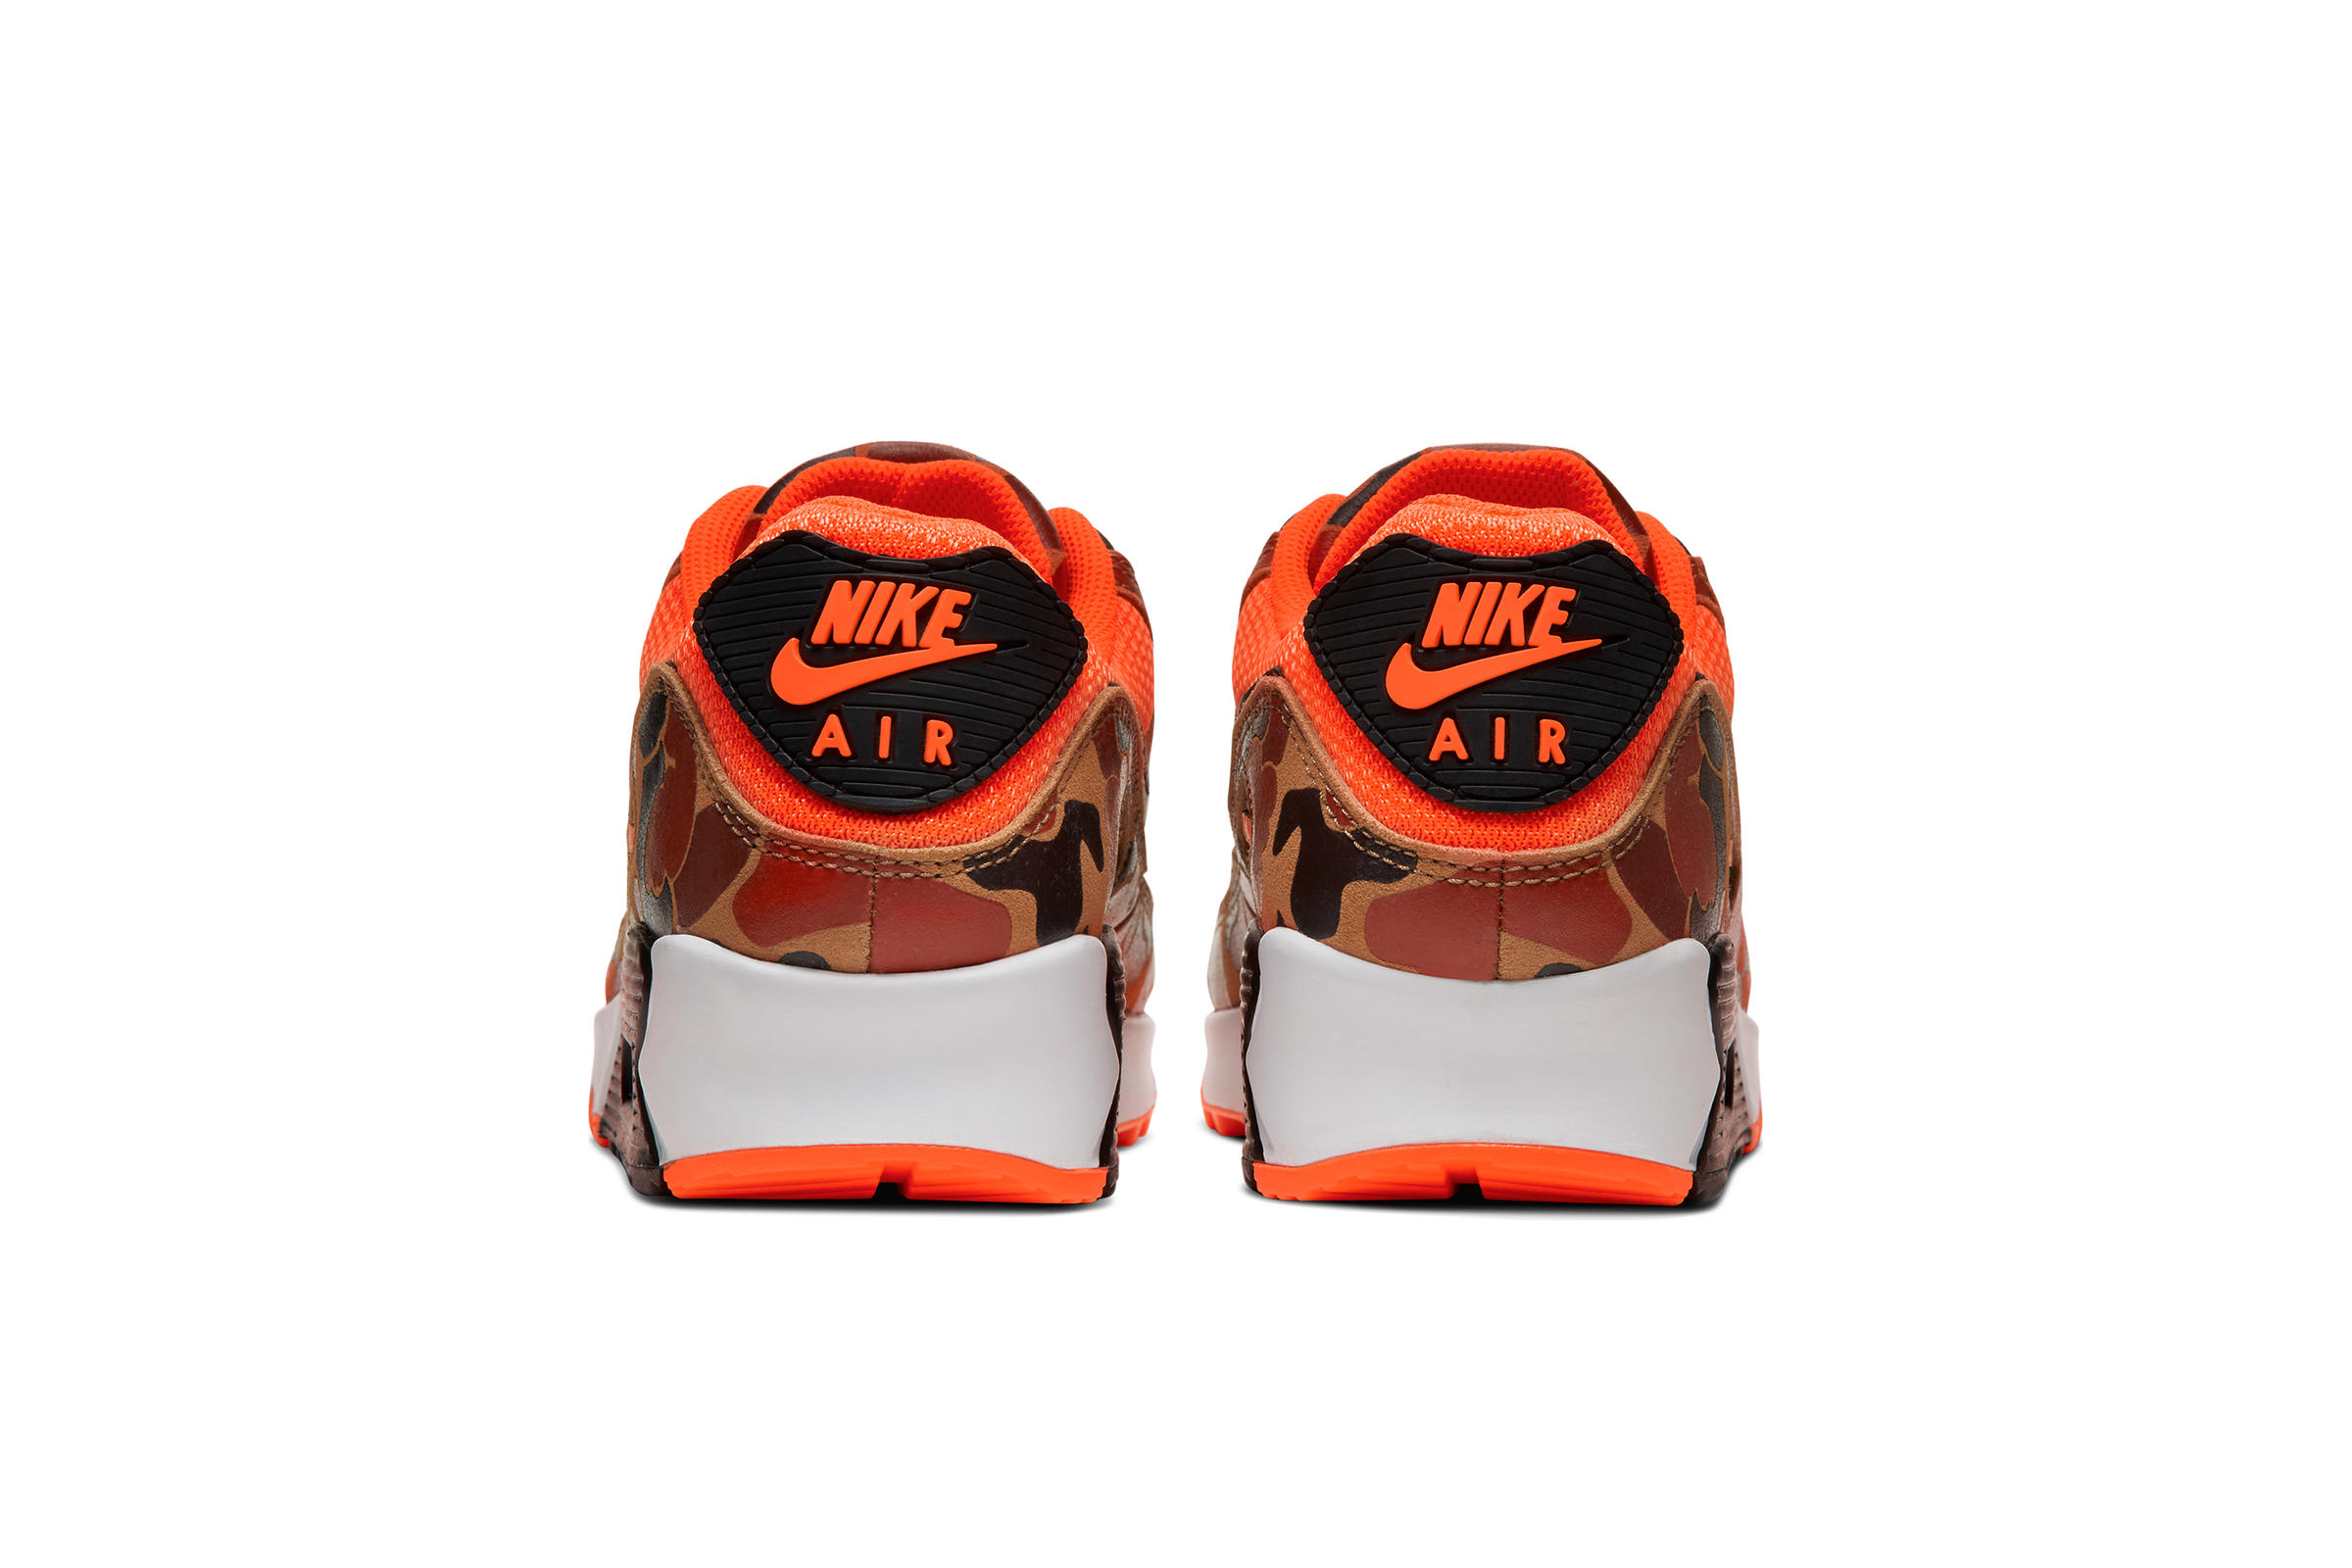 Nike AIR MAX 90 SP "ORANGE CAMO"